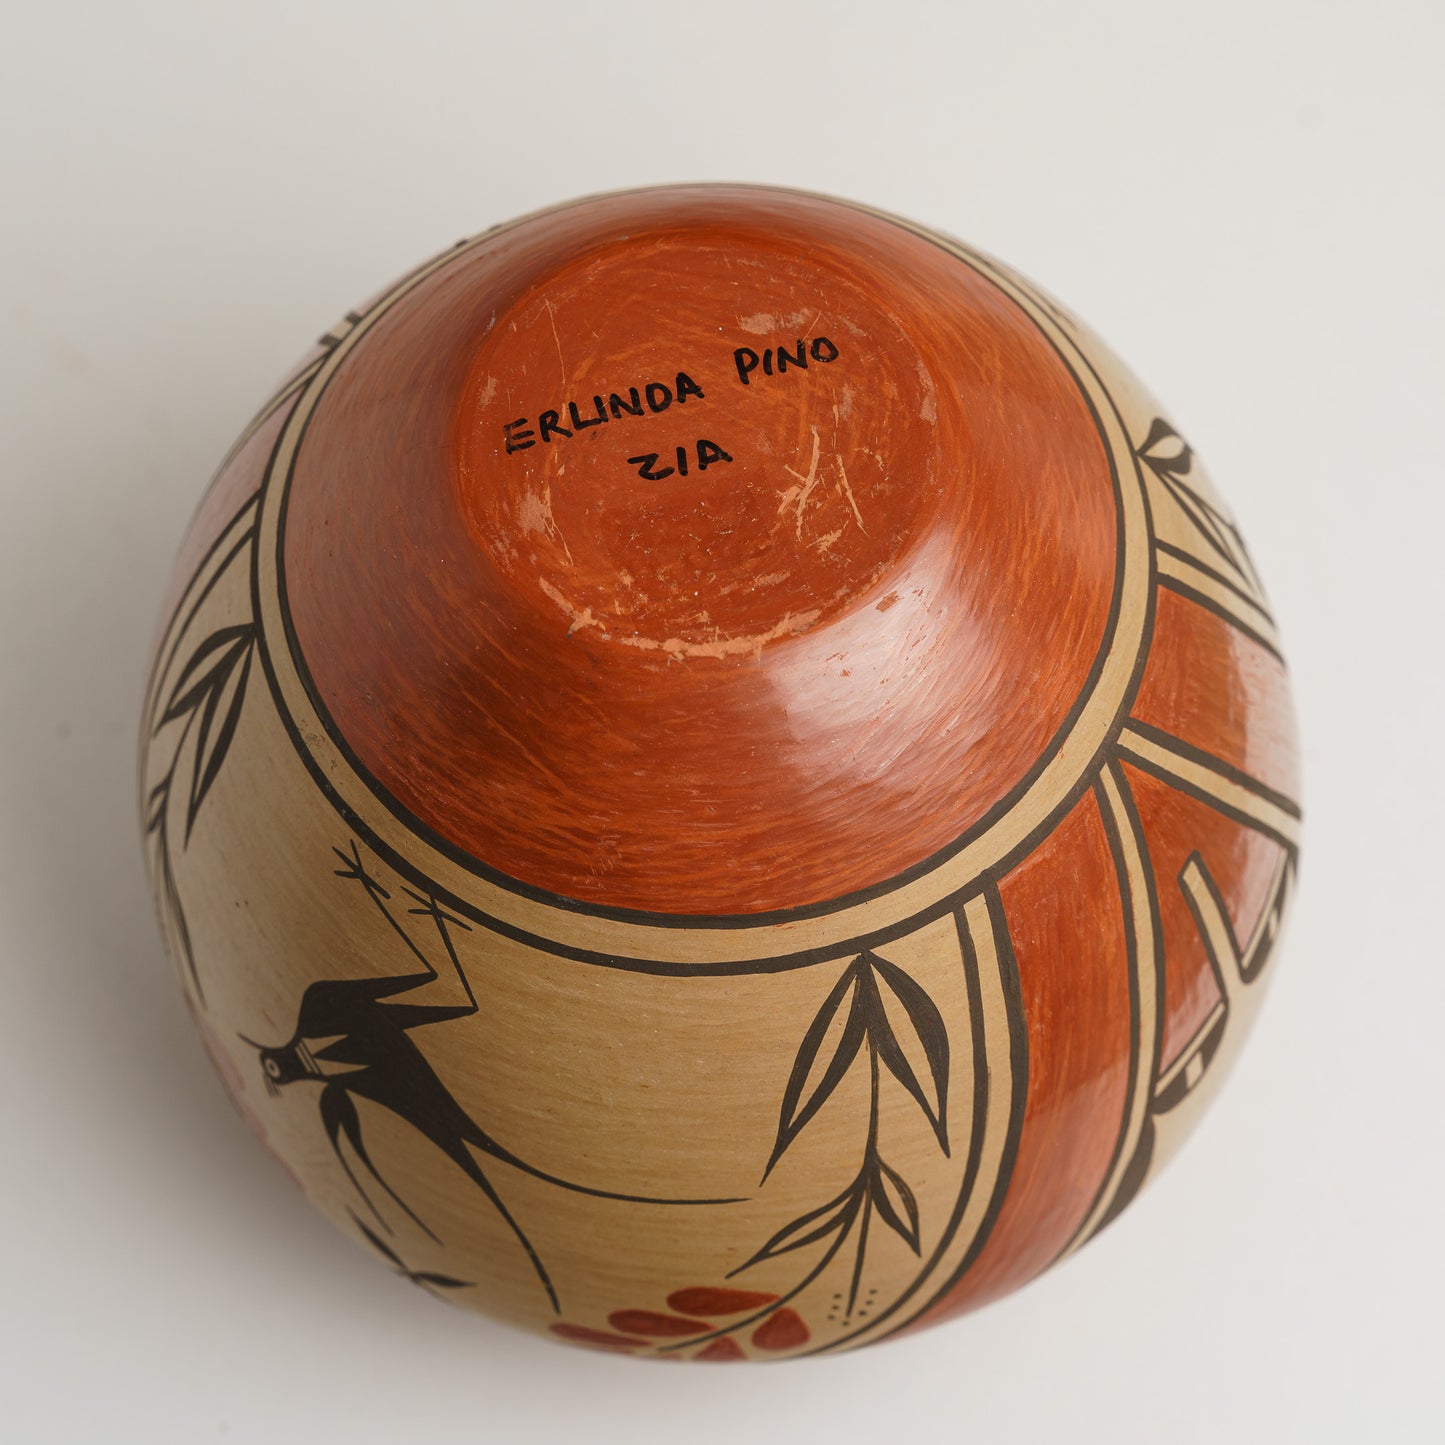 Vintage Pueblo Indian Pot by Erlinda Pino Zia